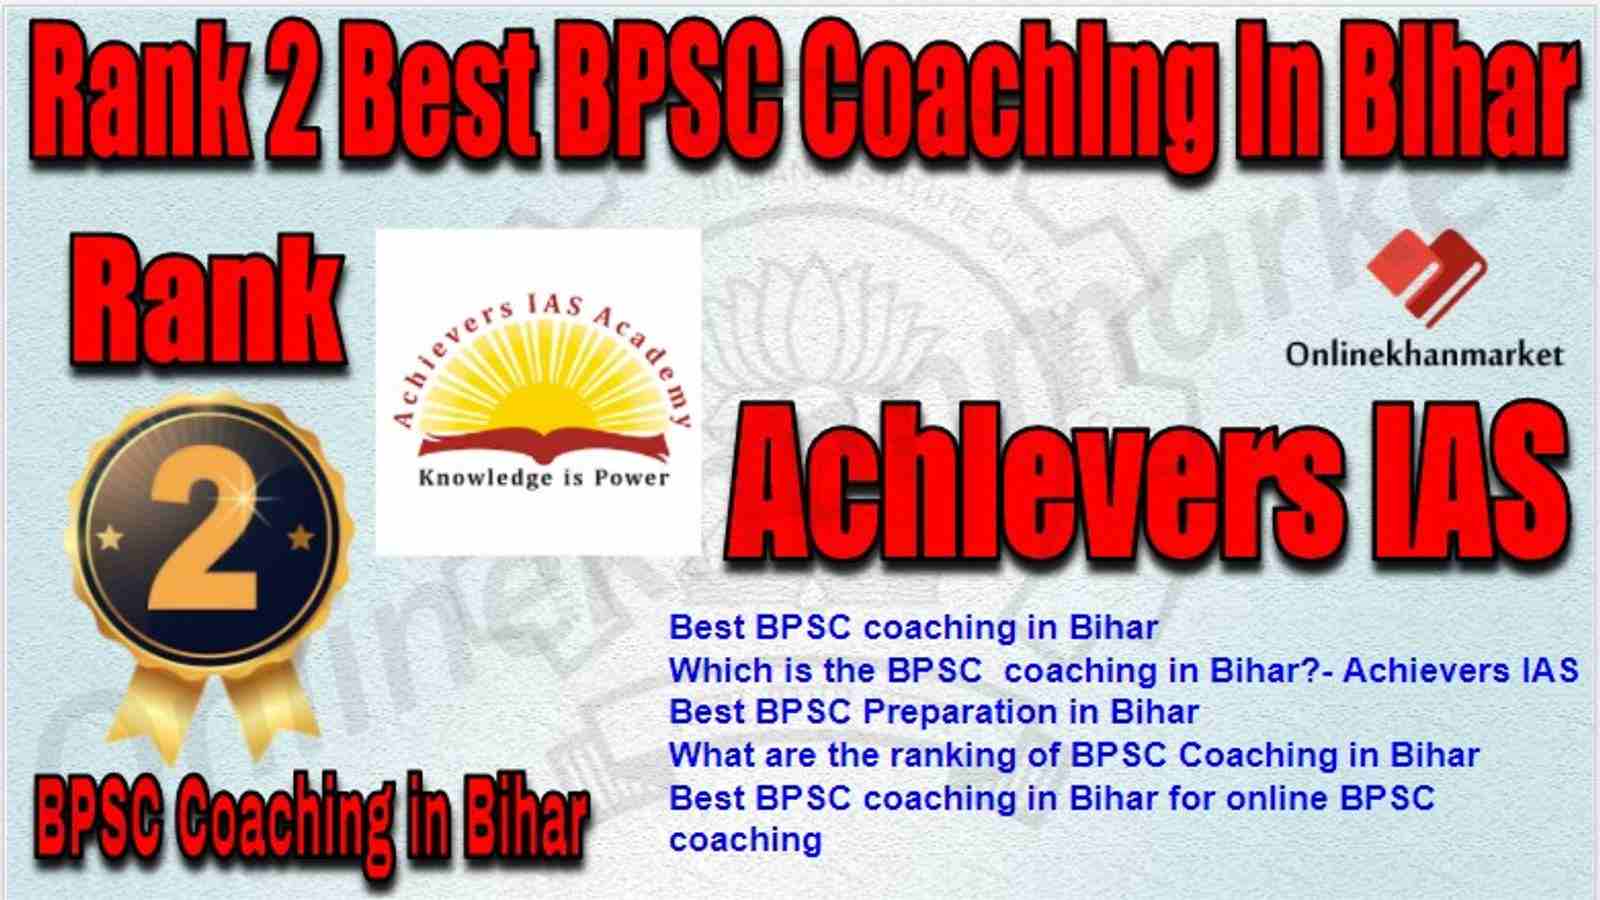 Rank 2 Best BPSC Coaching in bihar